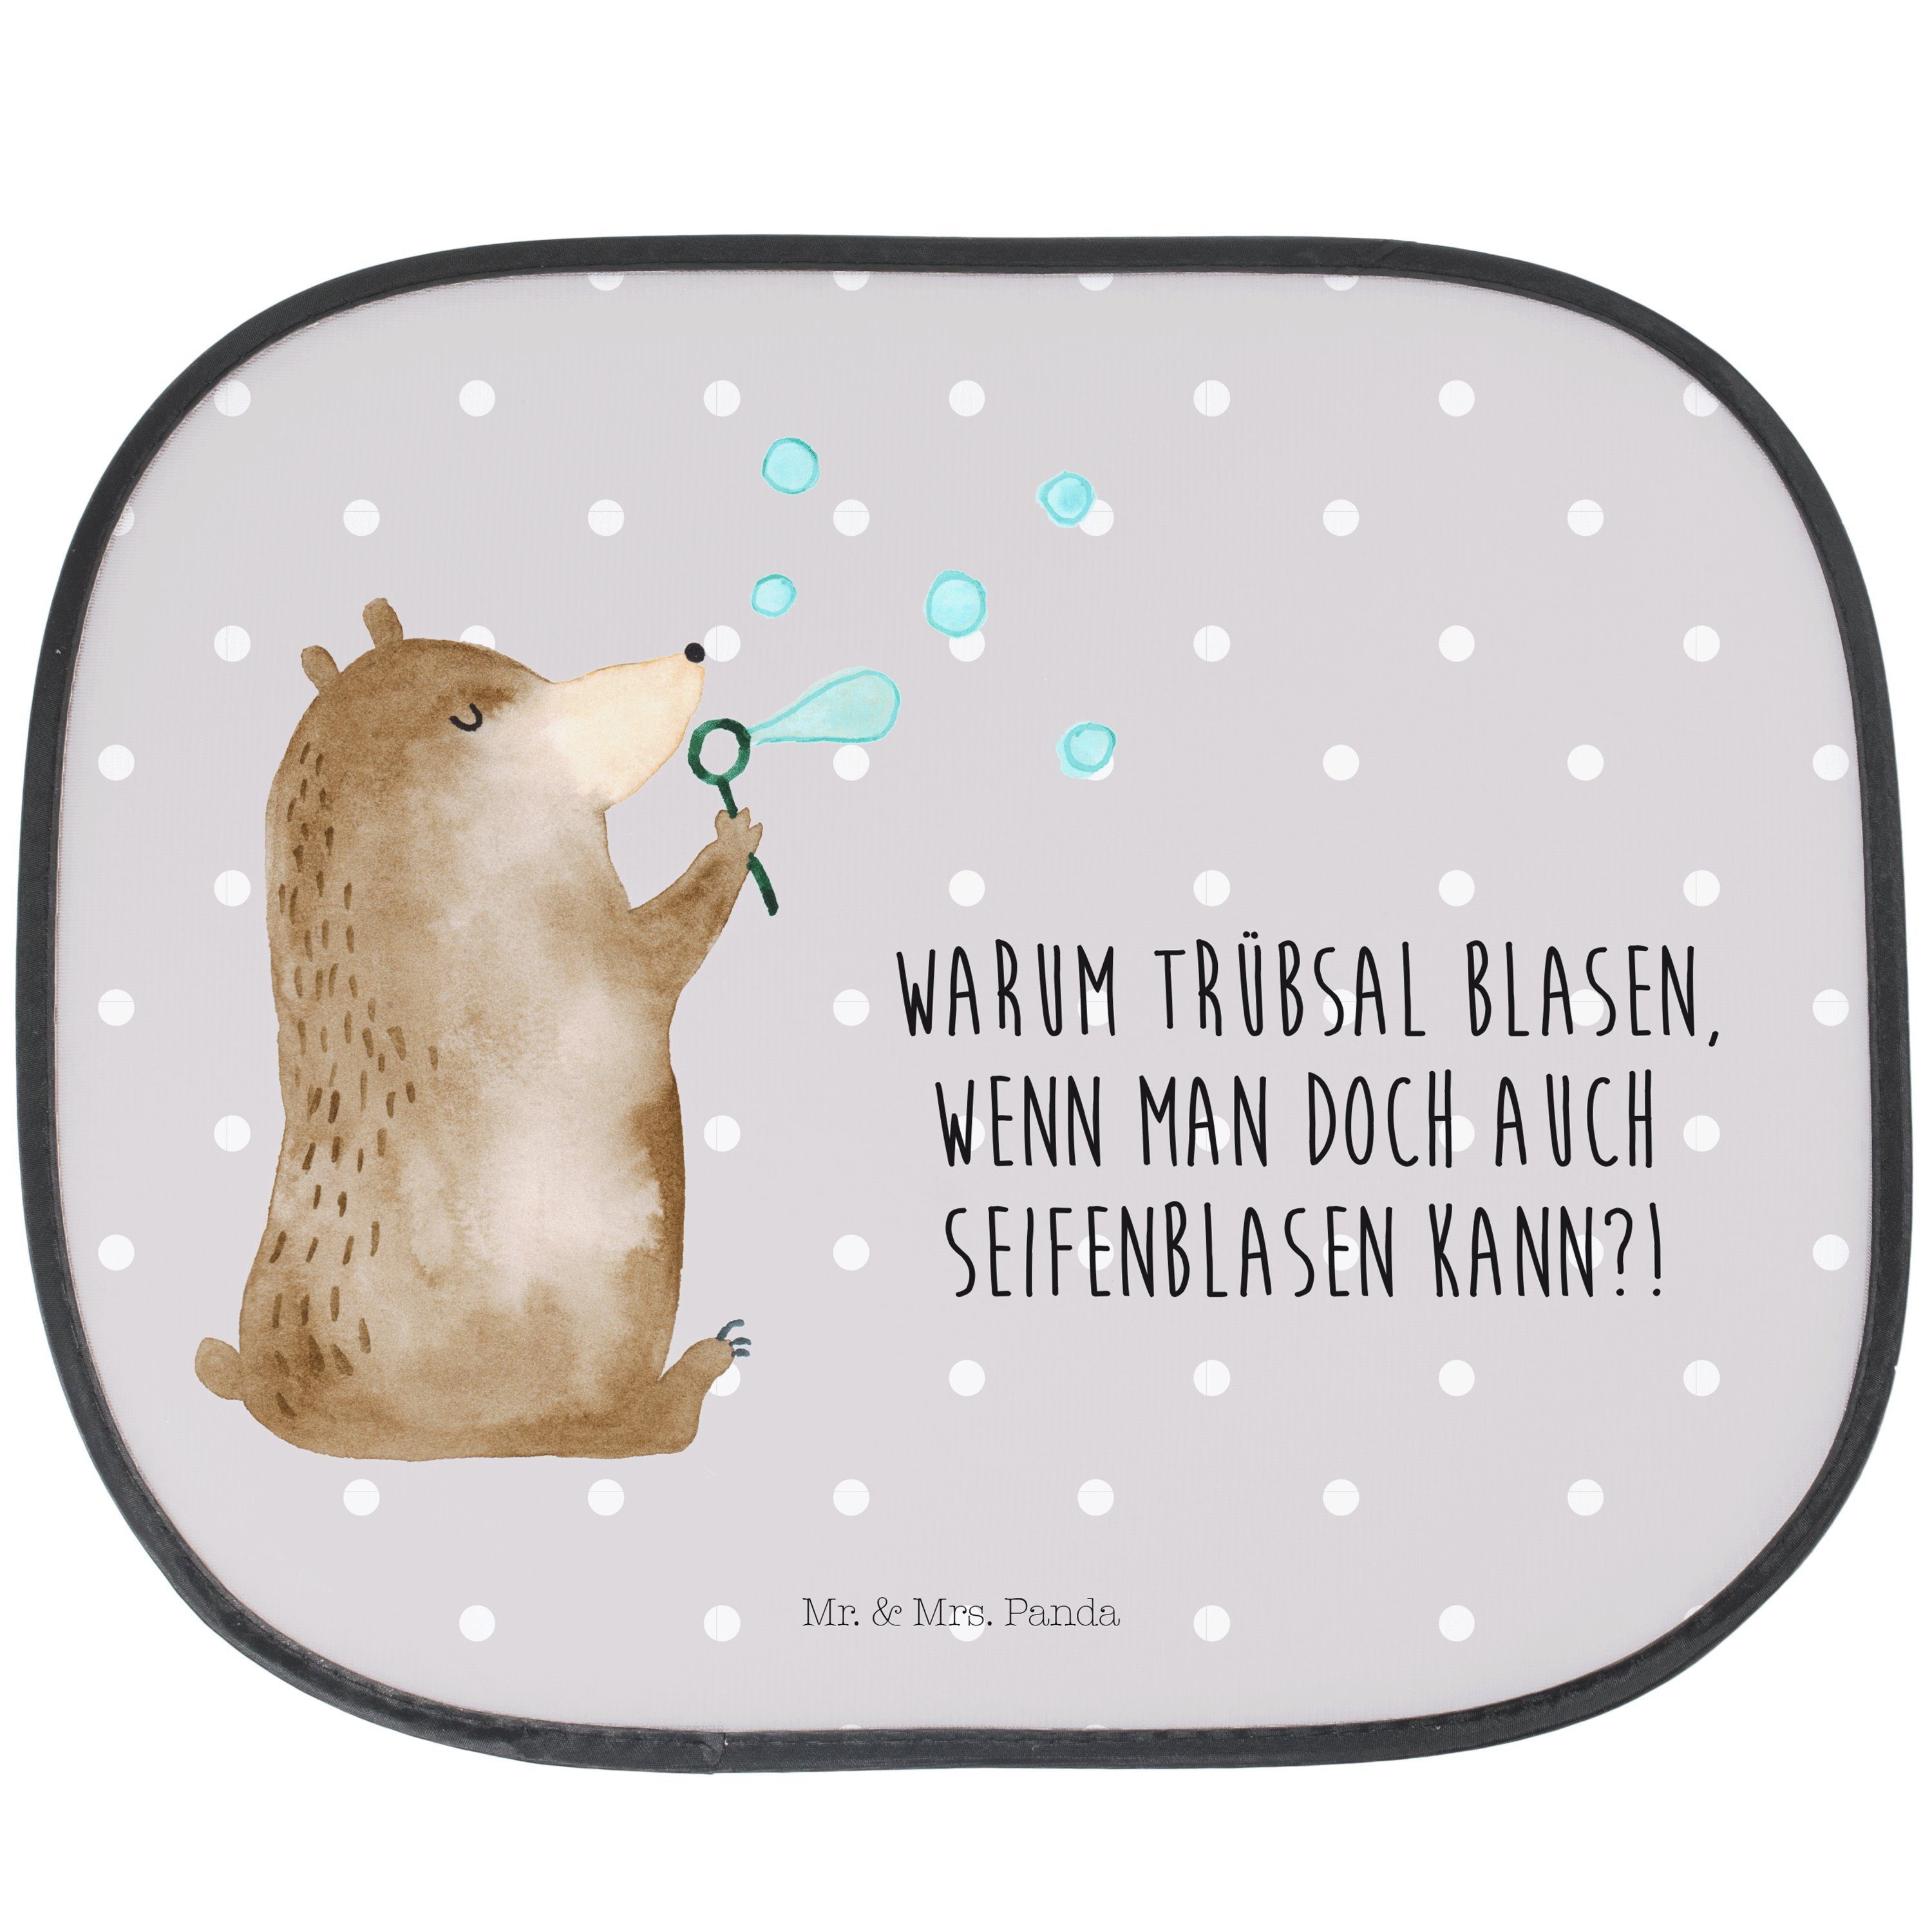 Sonnenschutz Bär Seifenblasen - Grau Pastell - Geschenk, Sonnenblende, Teddy, Auto, Mr. & Mrs. Panda, Seidenmatt